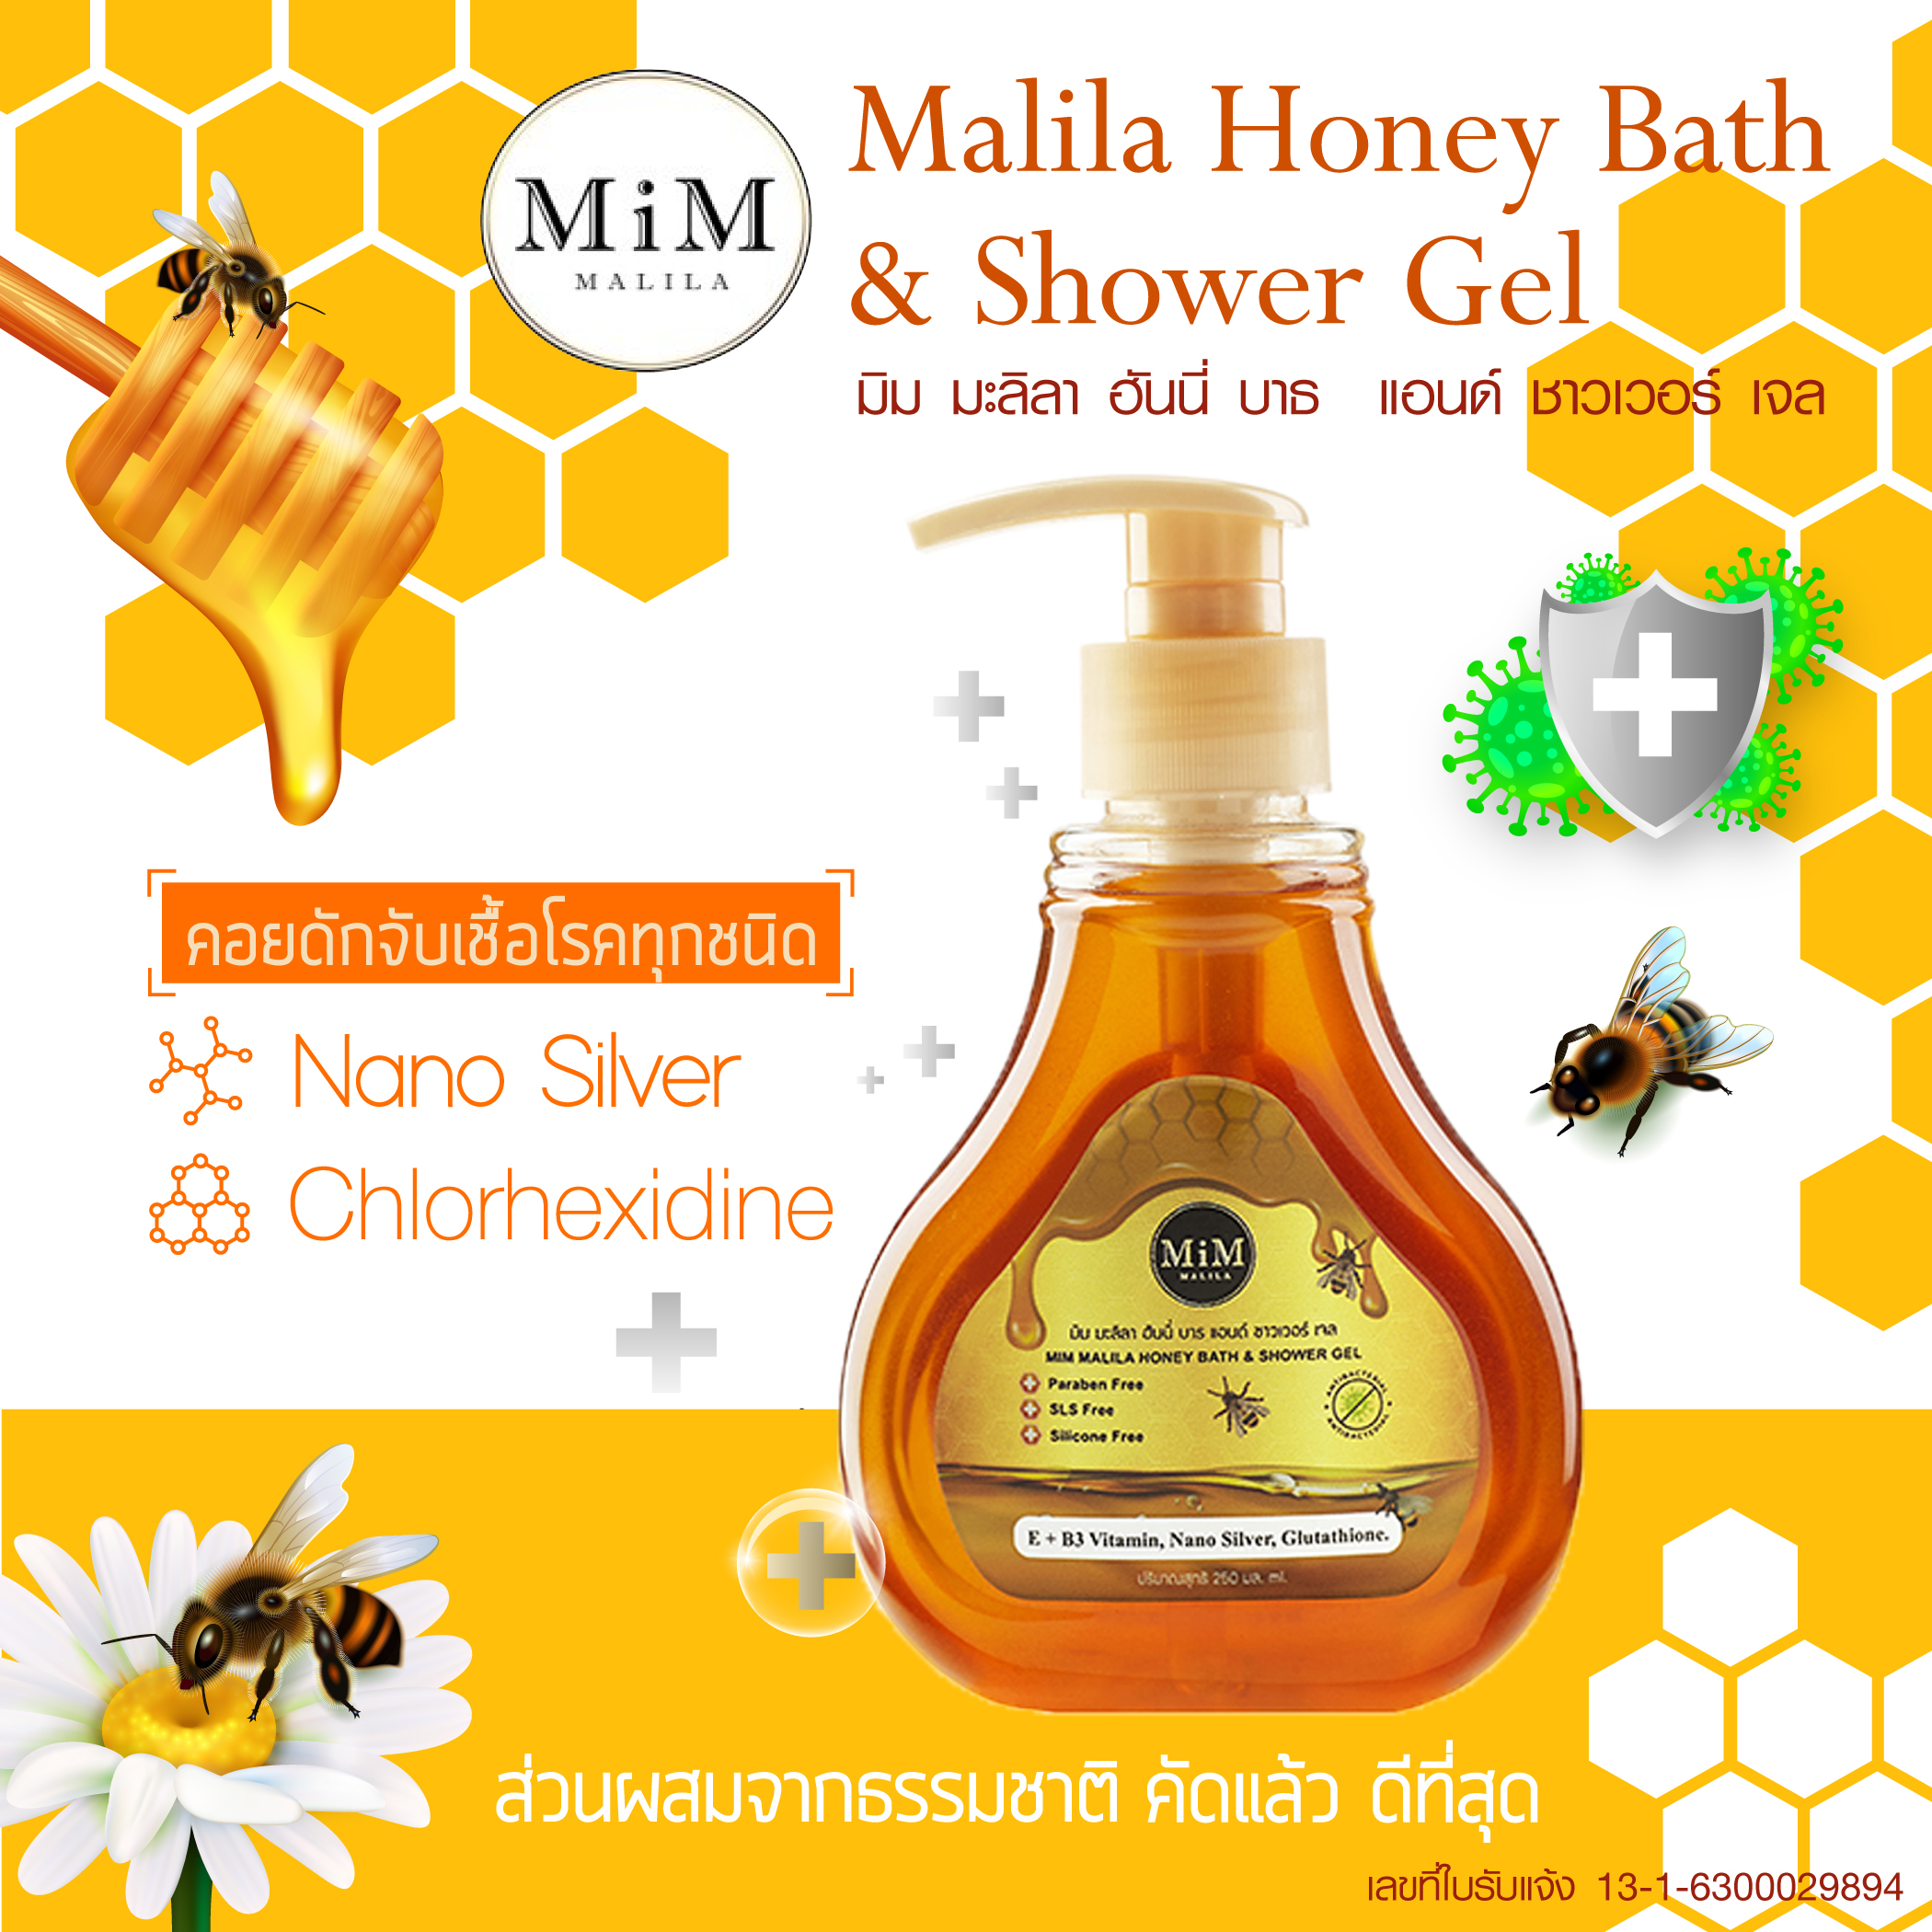 MiM Malila Honey Bath & Shower Gel